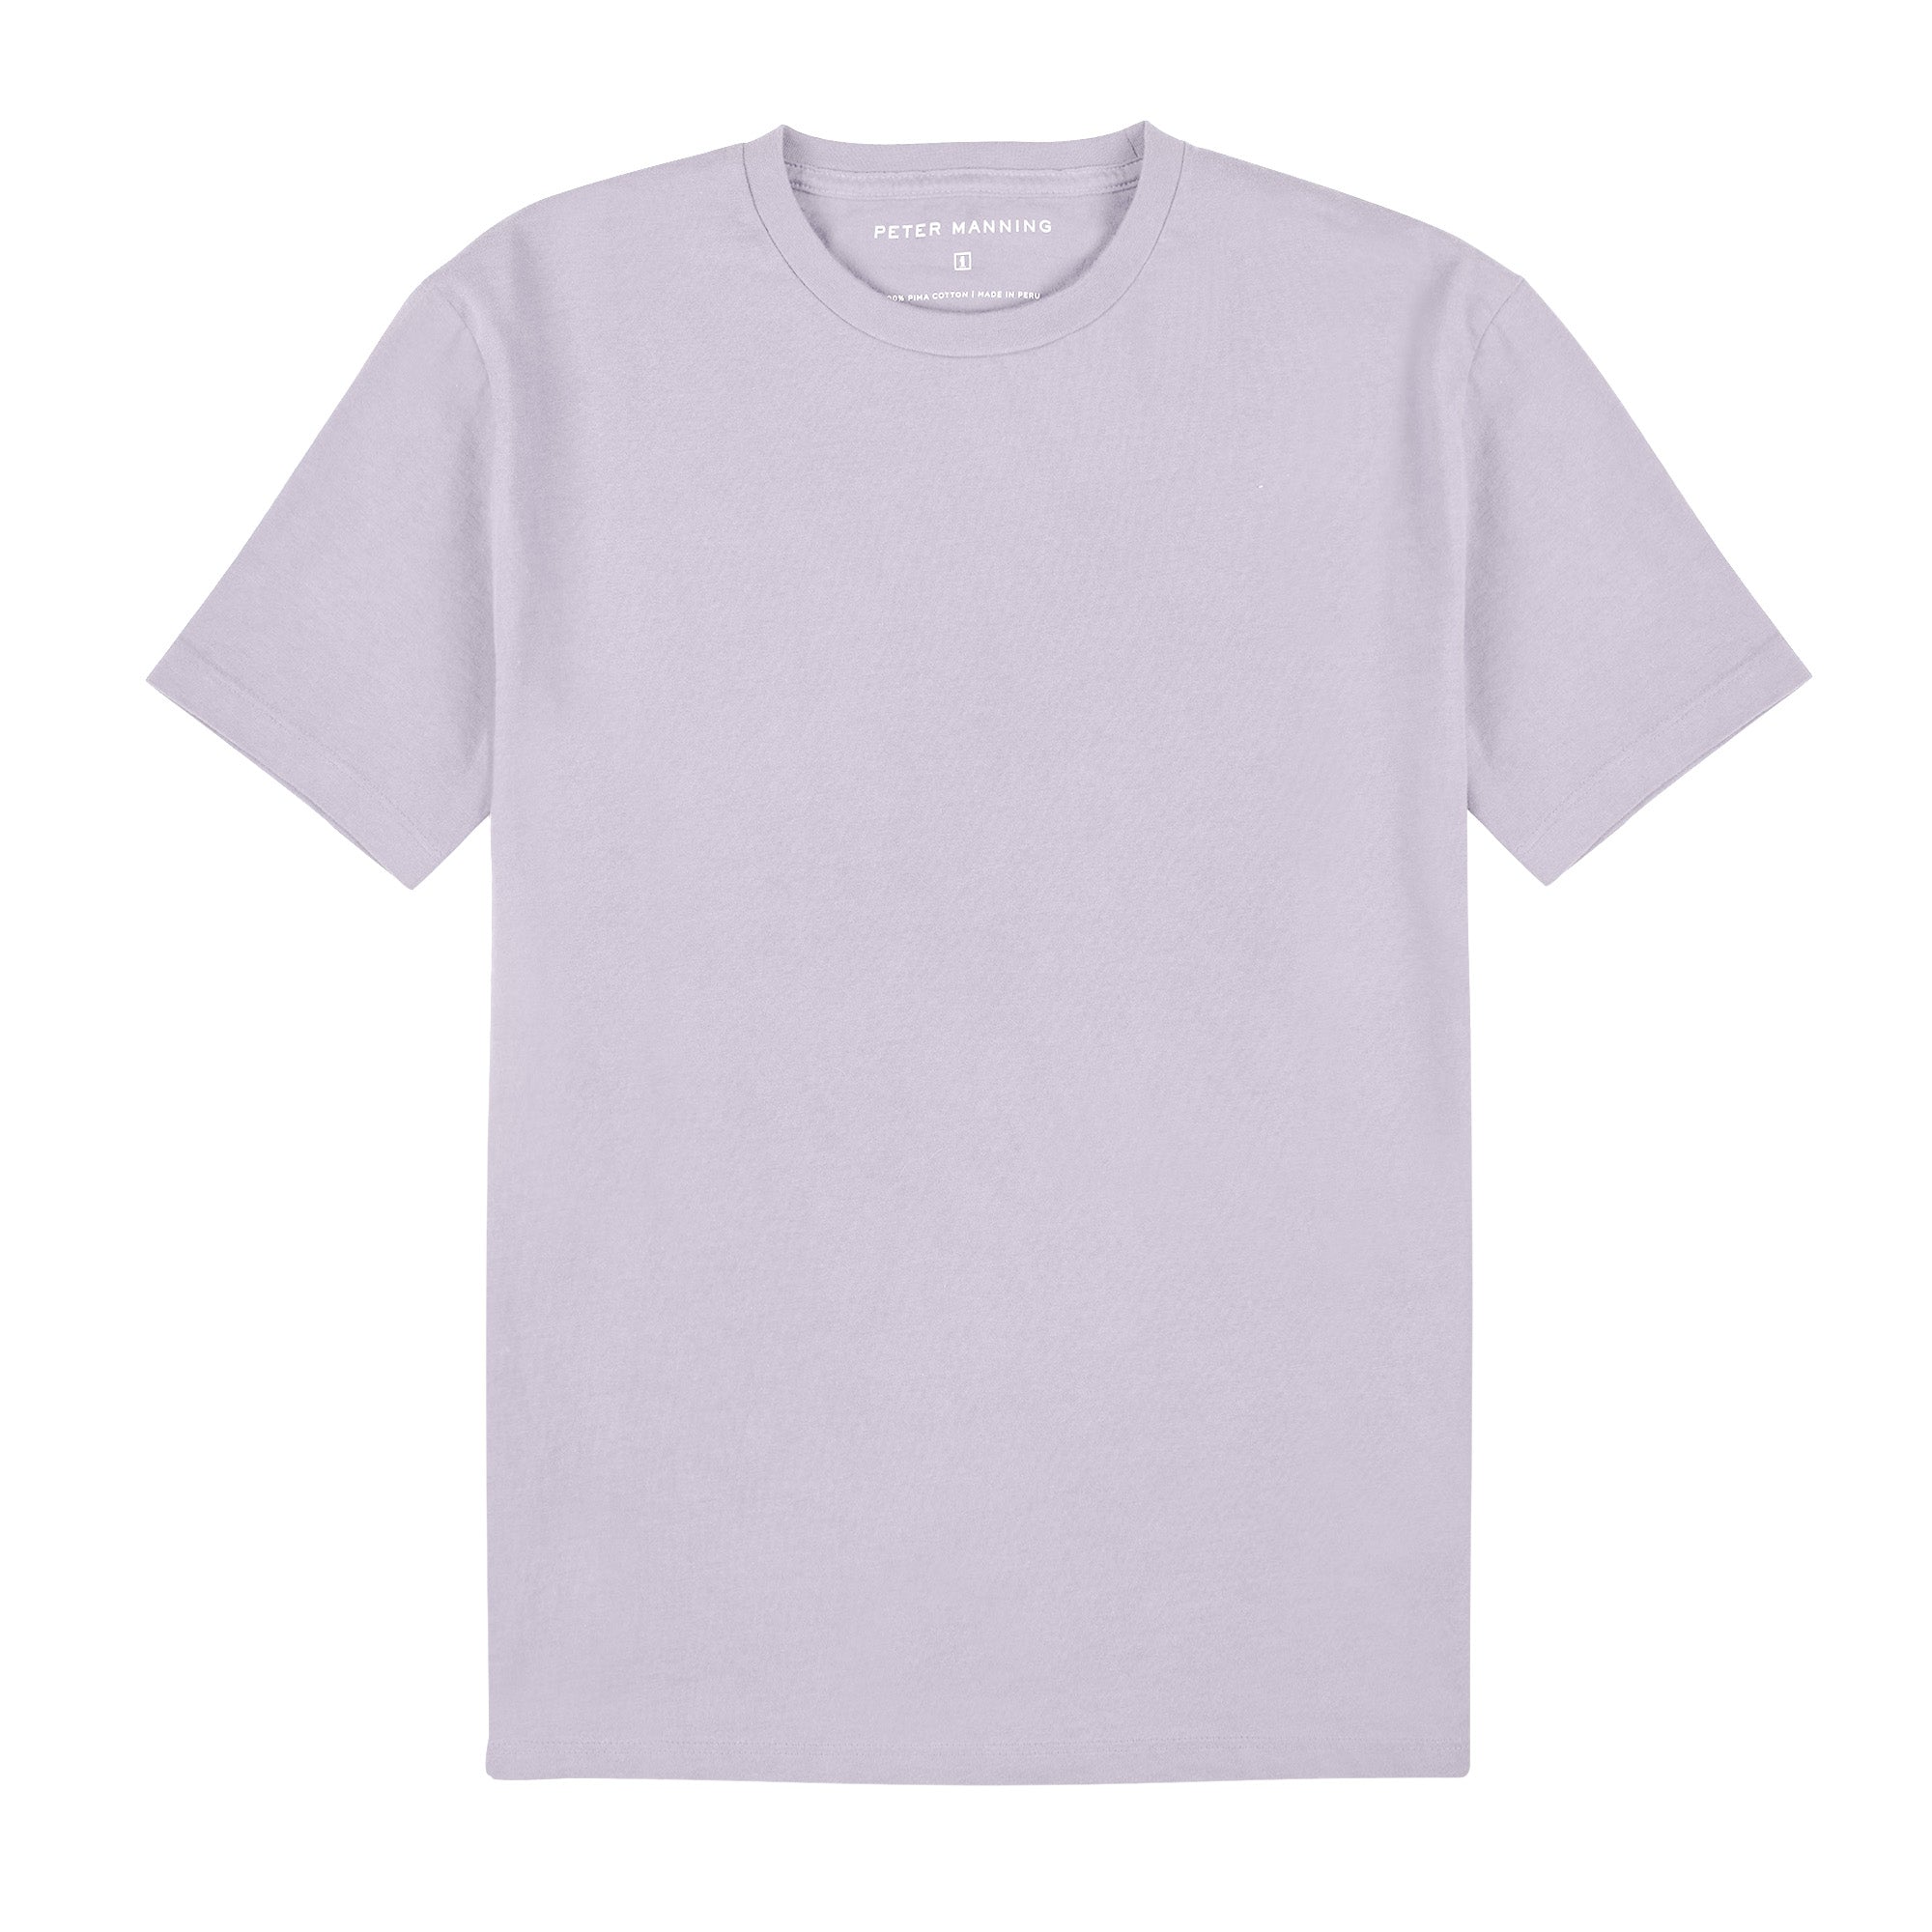 Vintage Crew T-Shirt - Lavender